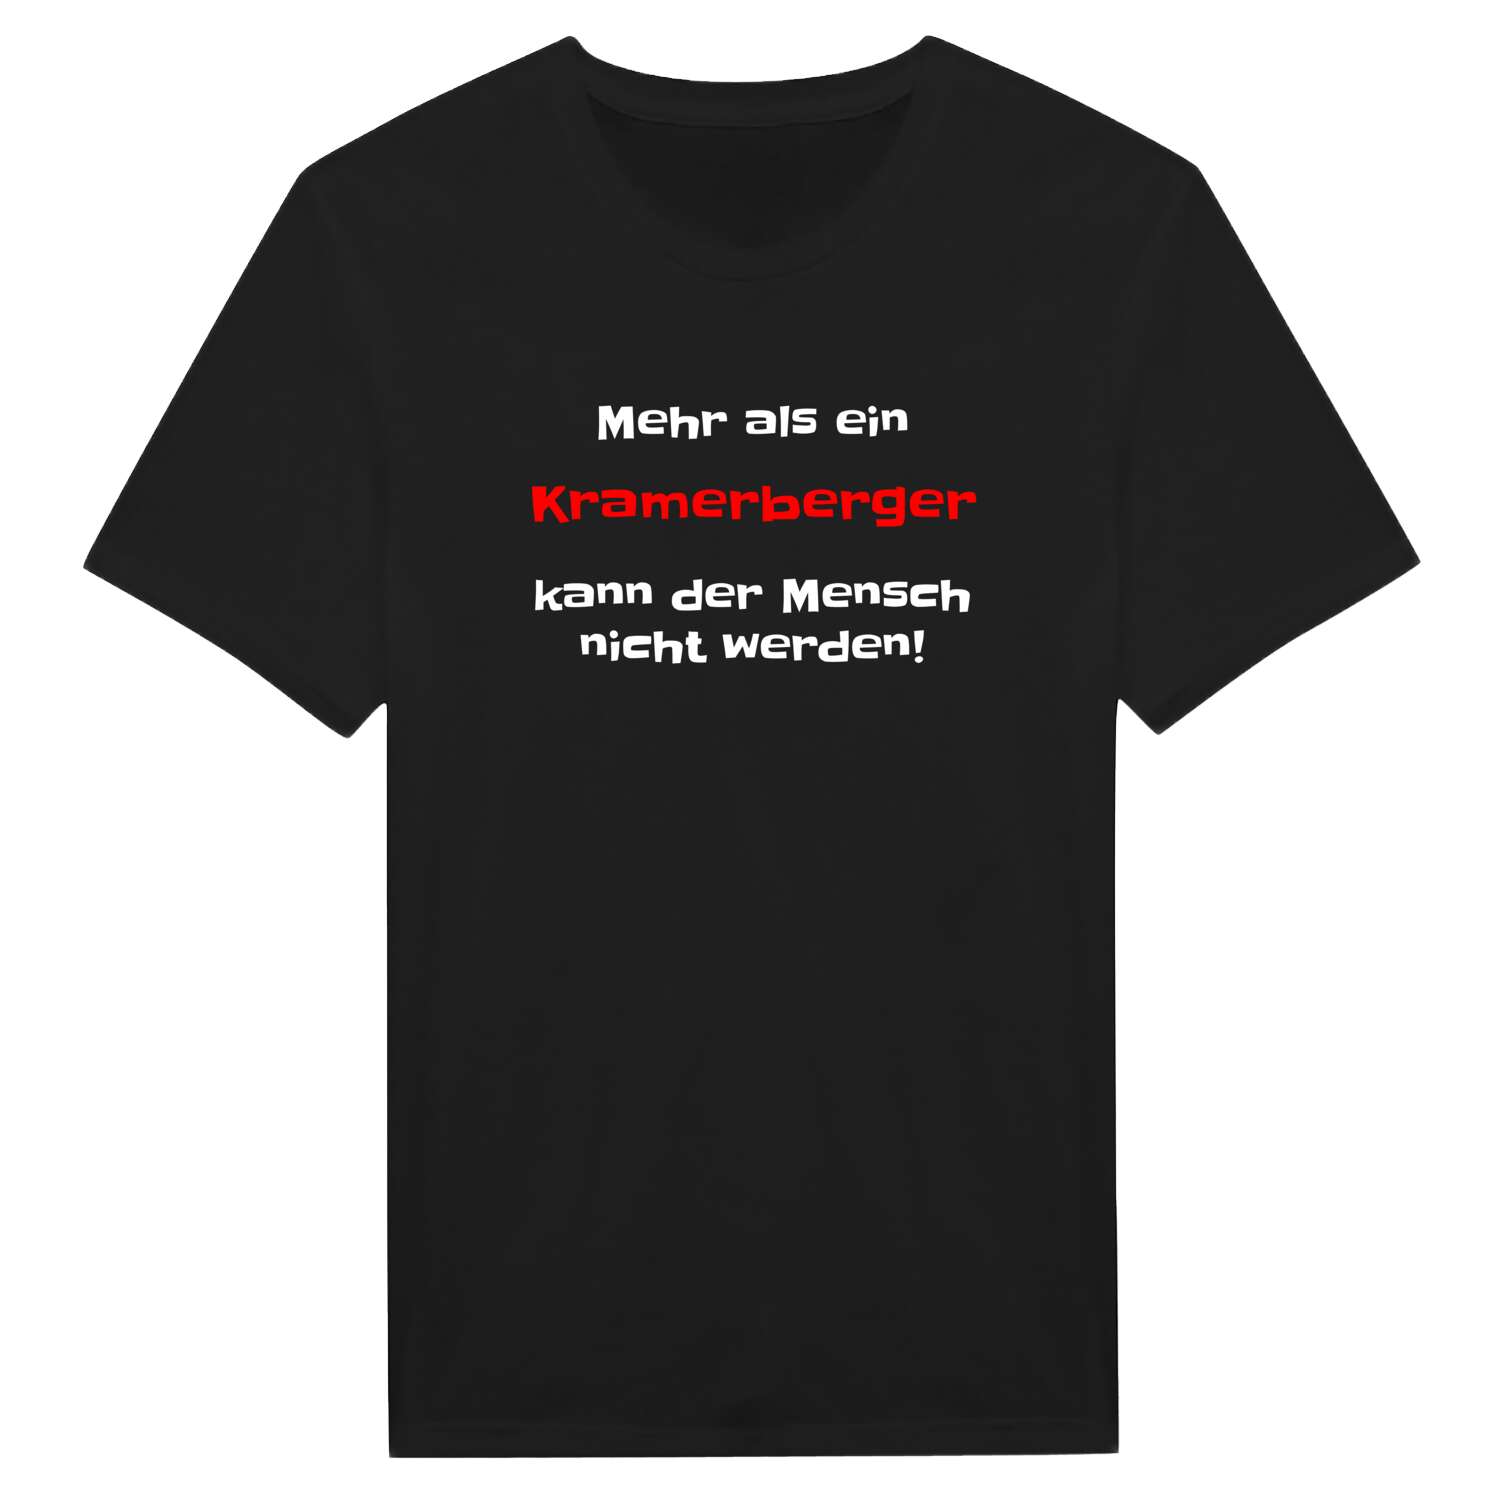 Kramerberg T-Shirt »Mehr als ein«